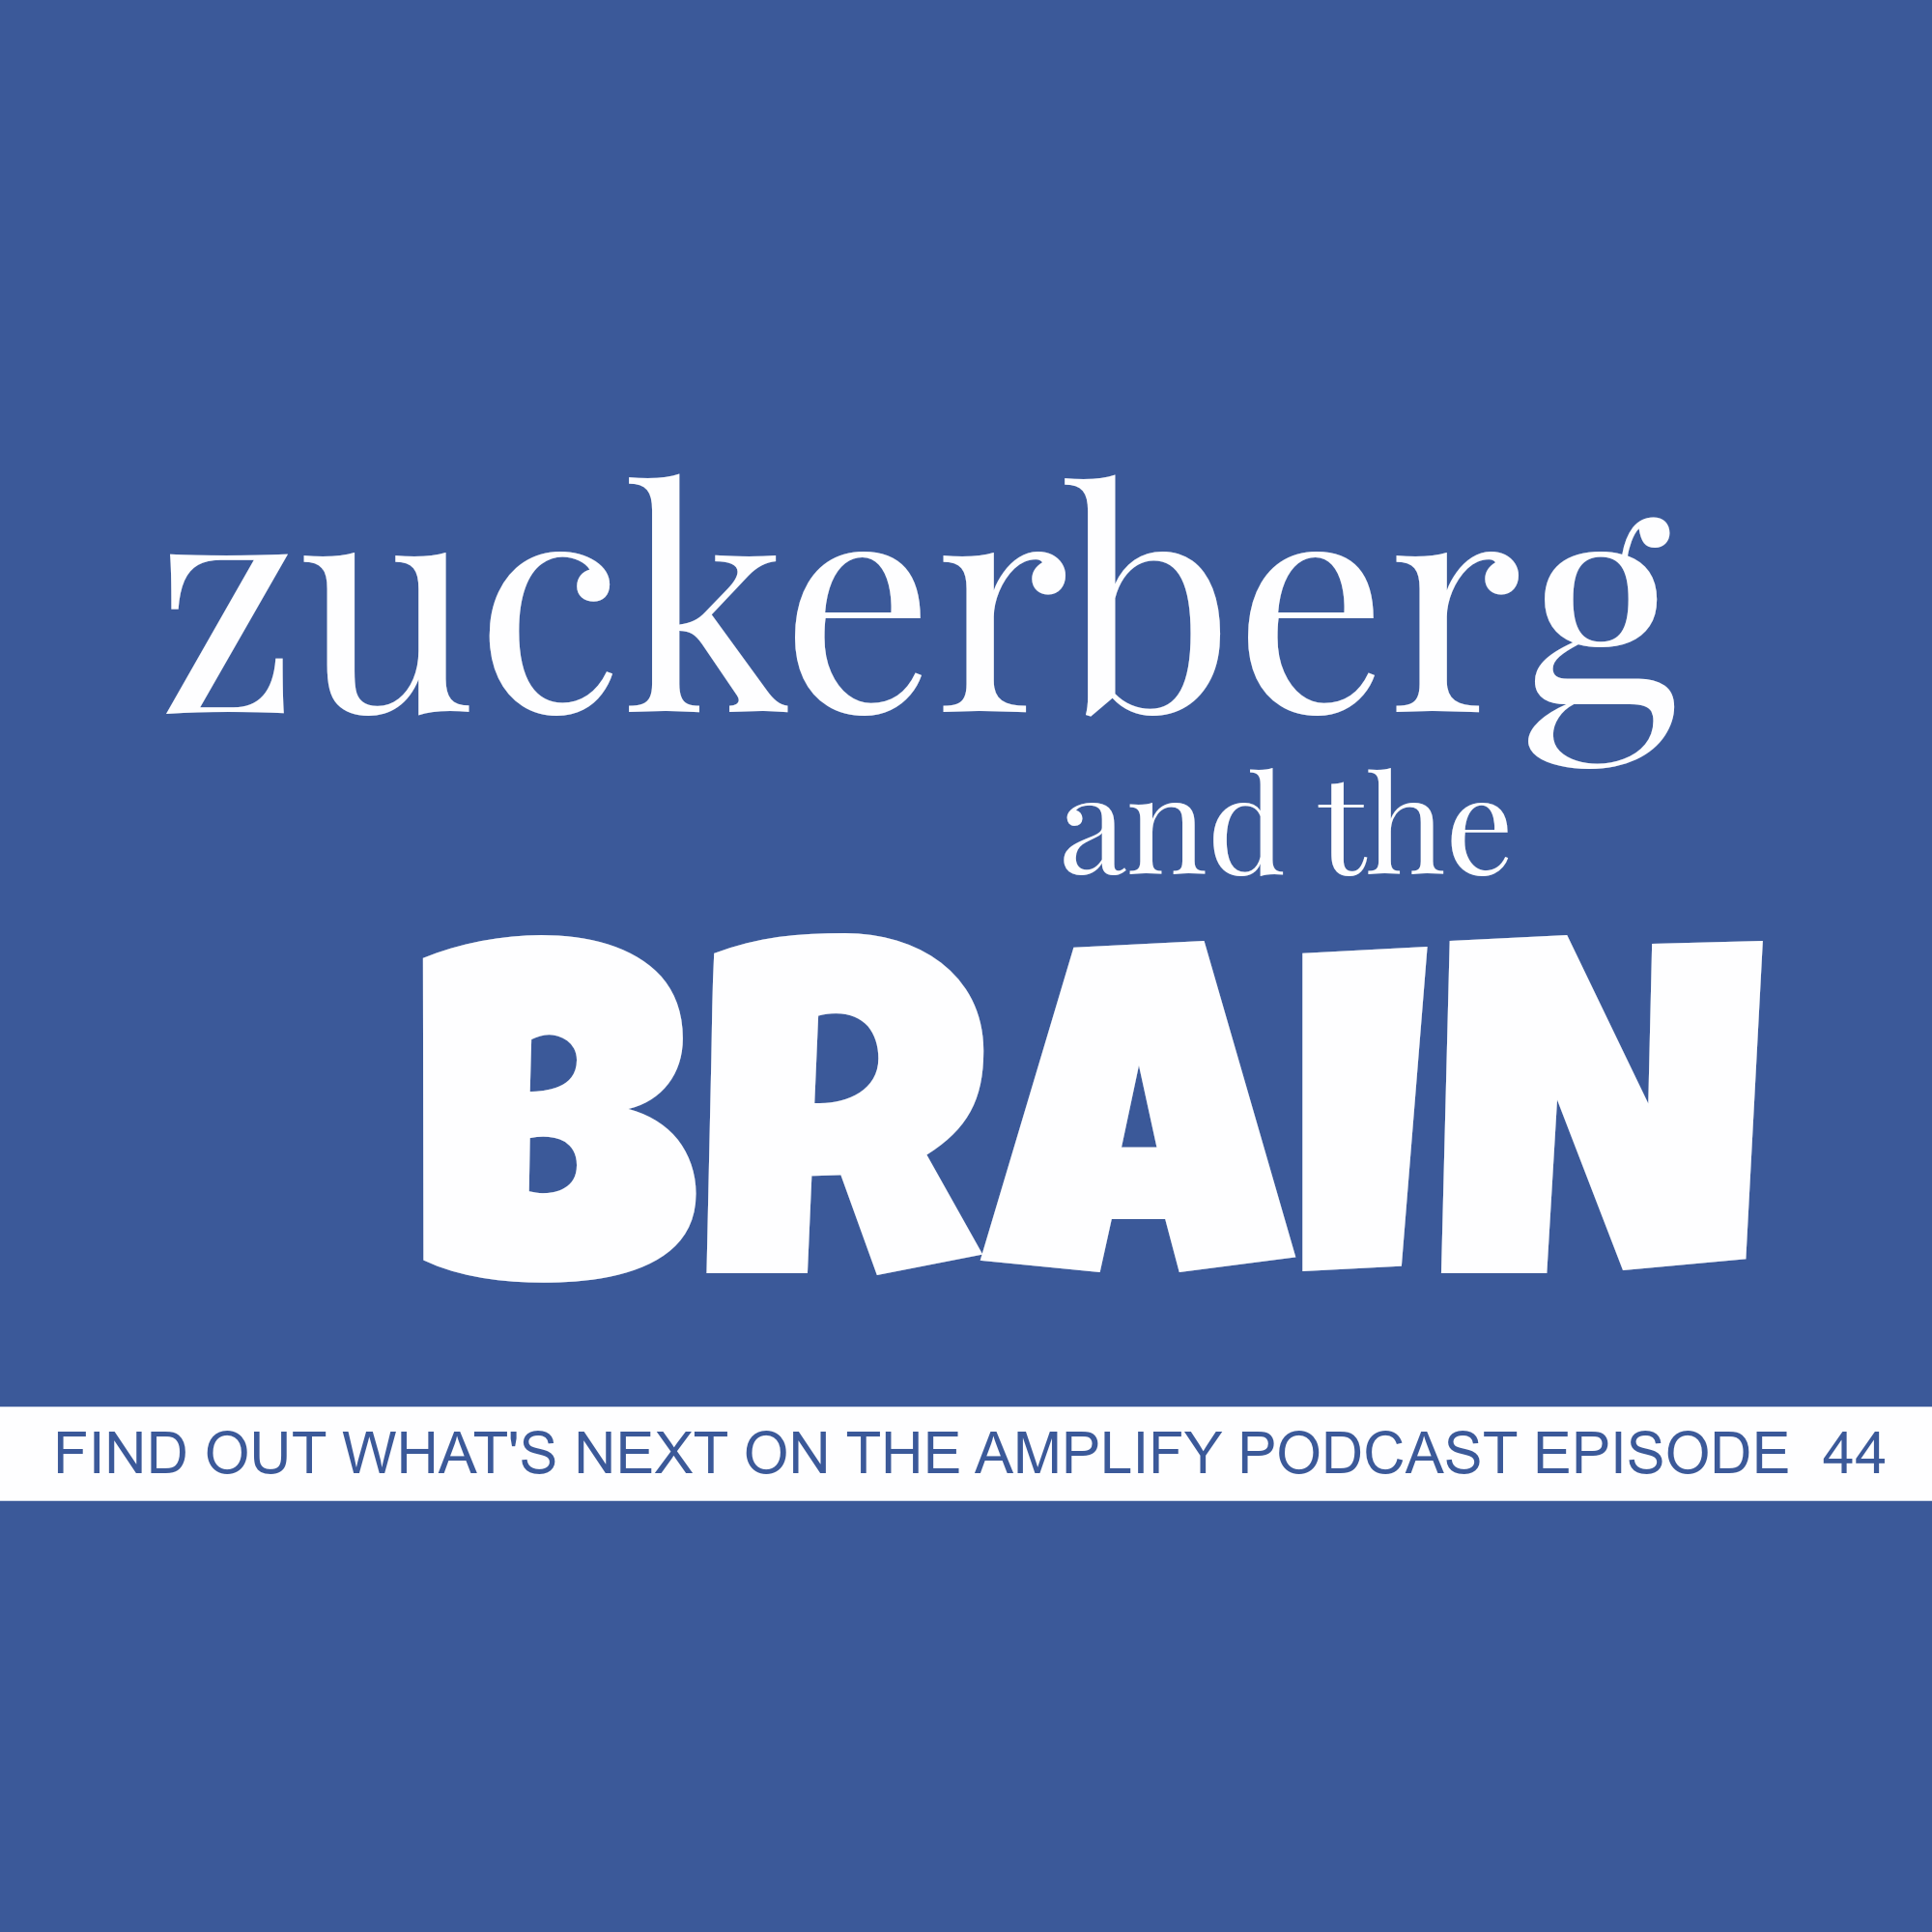 Zuckerberg and the Brain